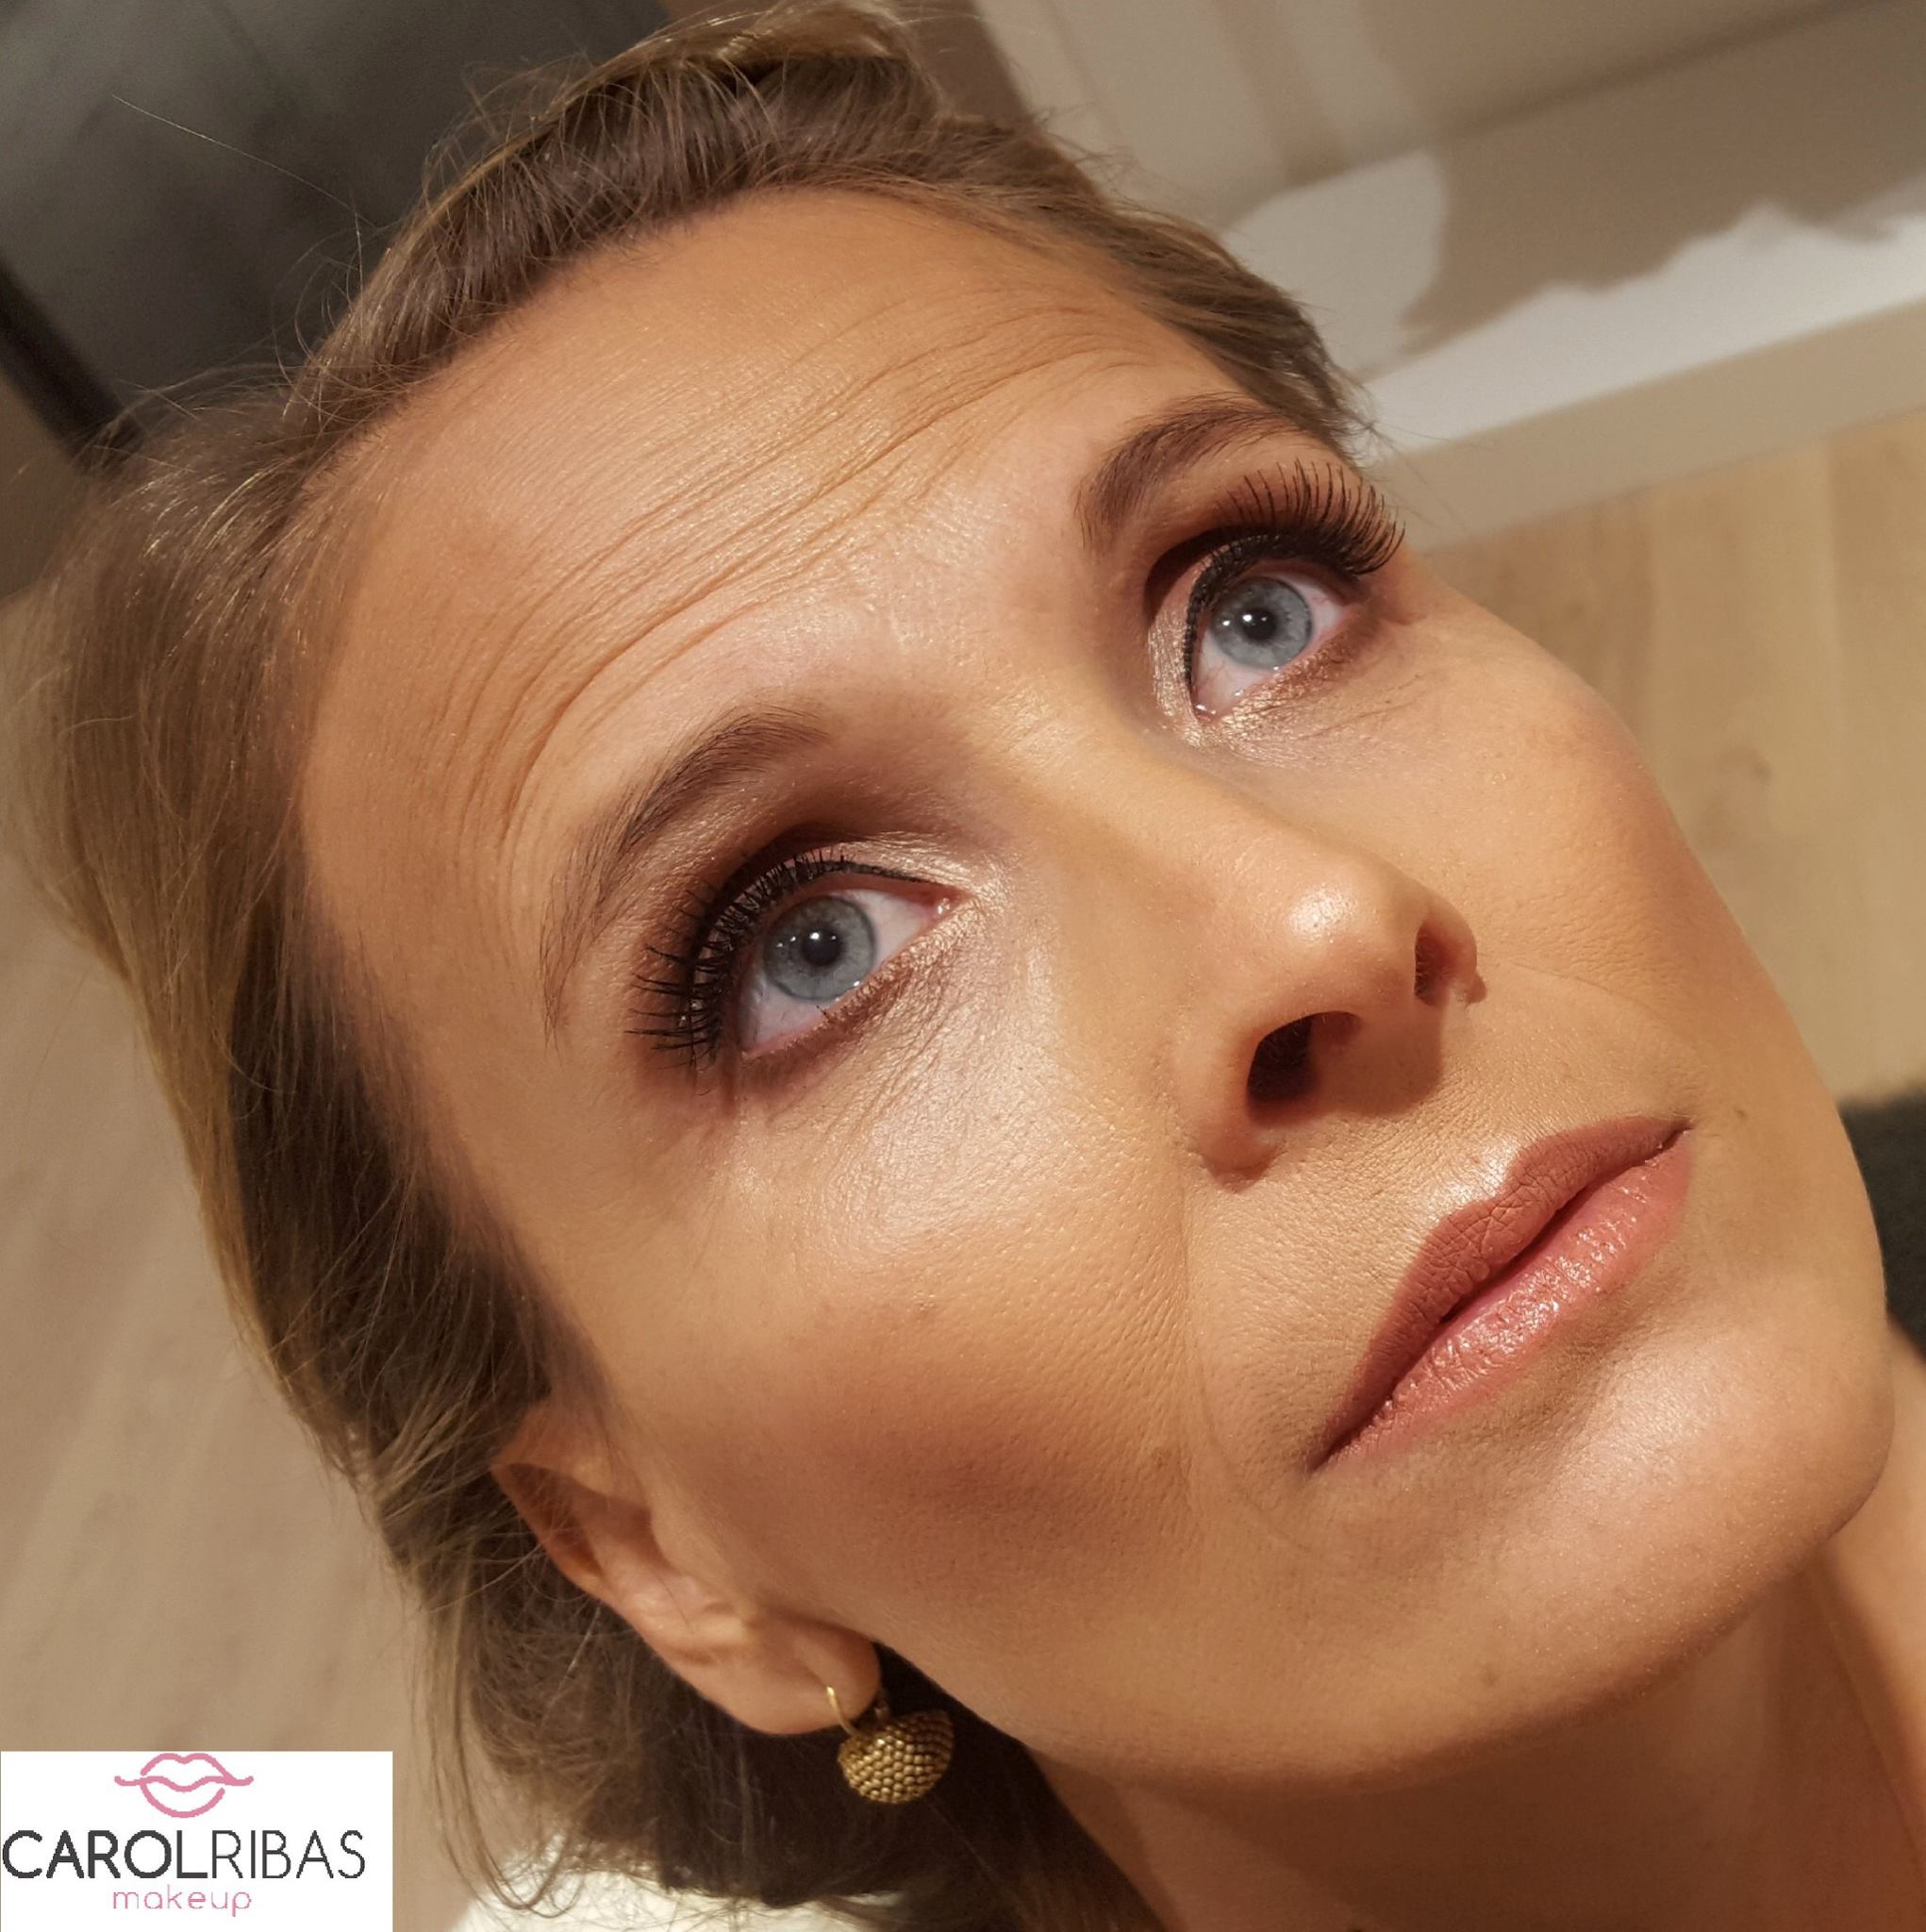   Carol Ribas Makeup